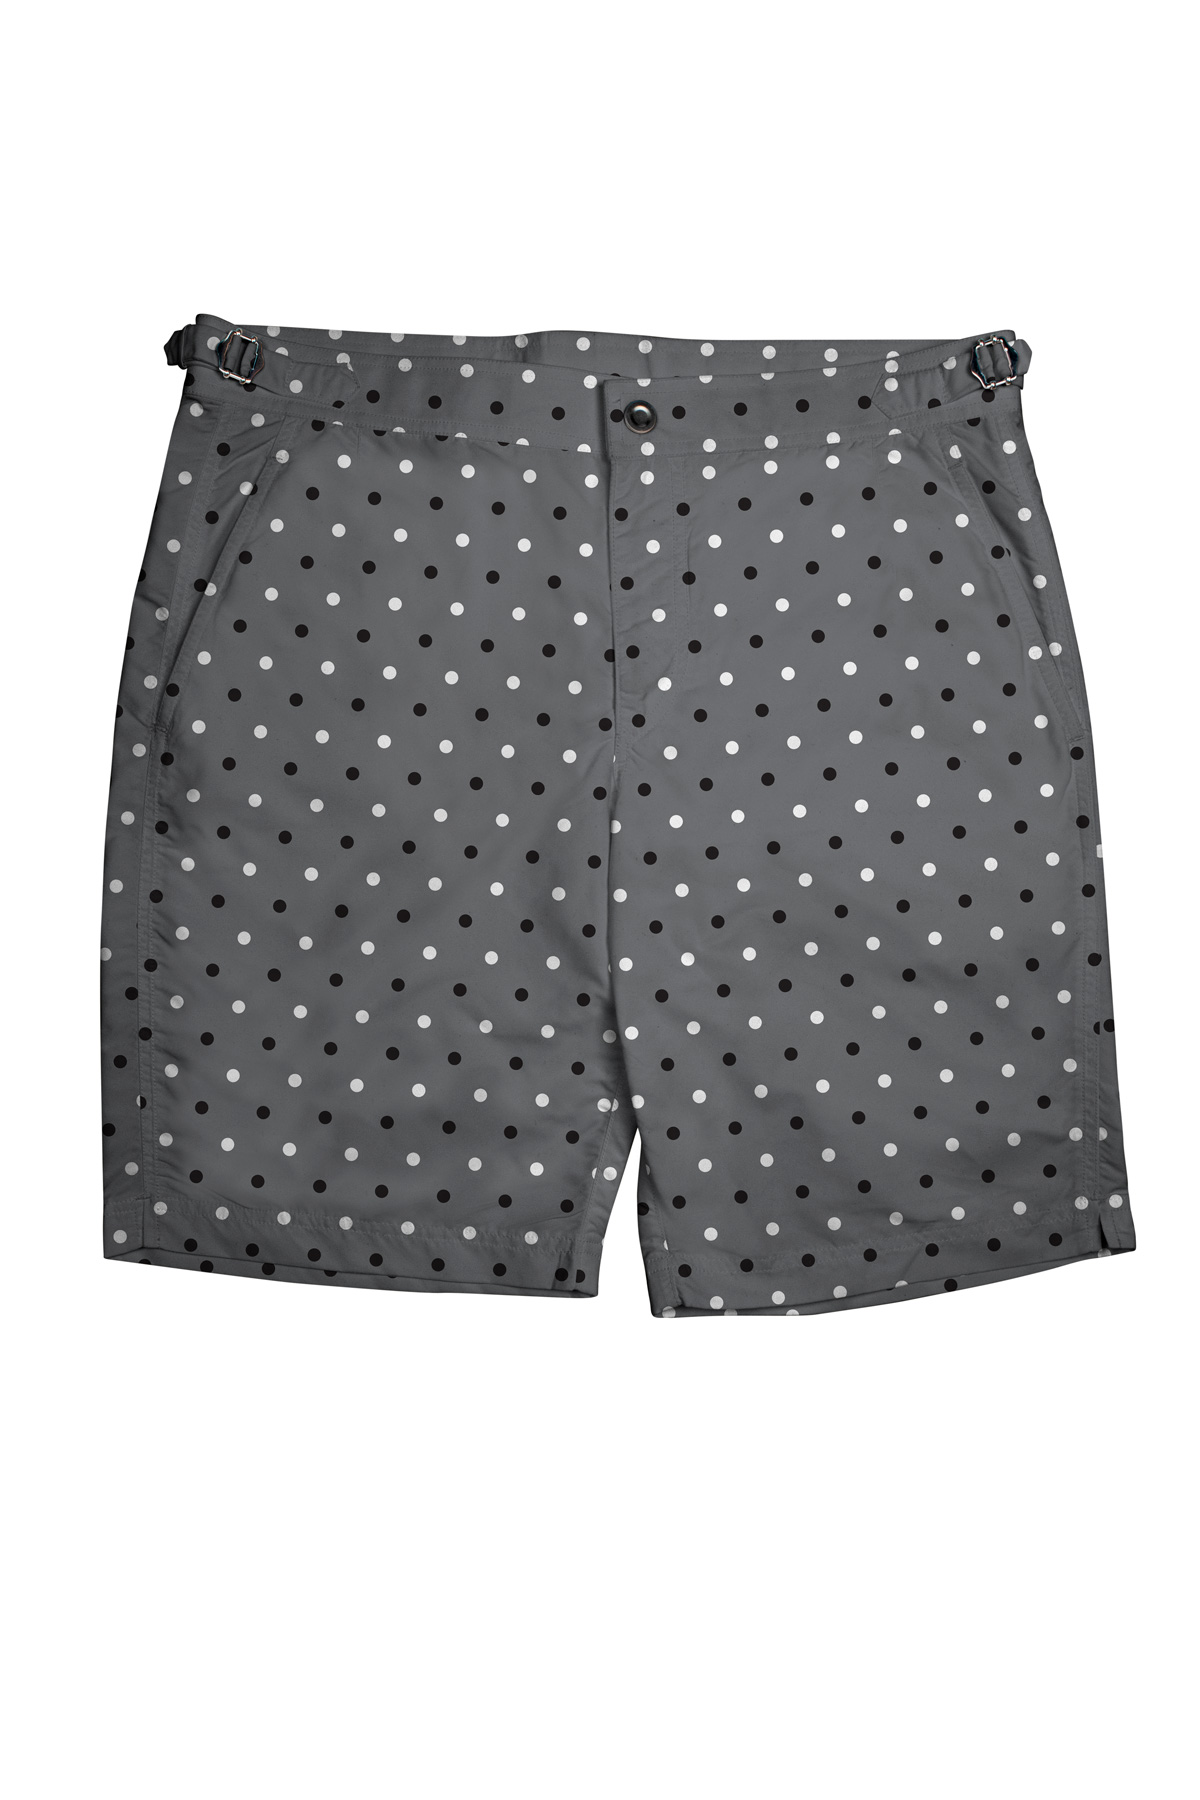 Black/White Polka Dots on Grey Swim Shorts